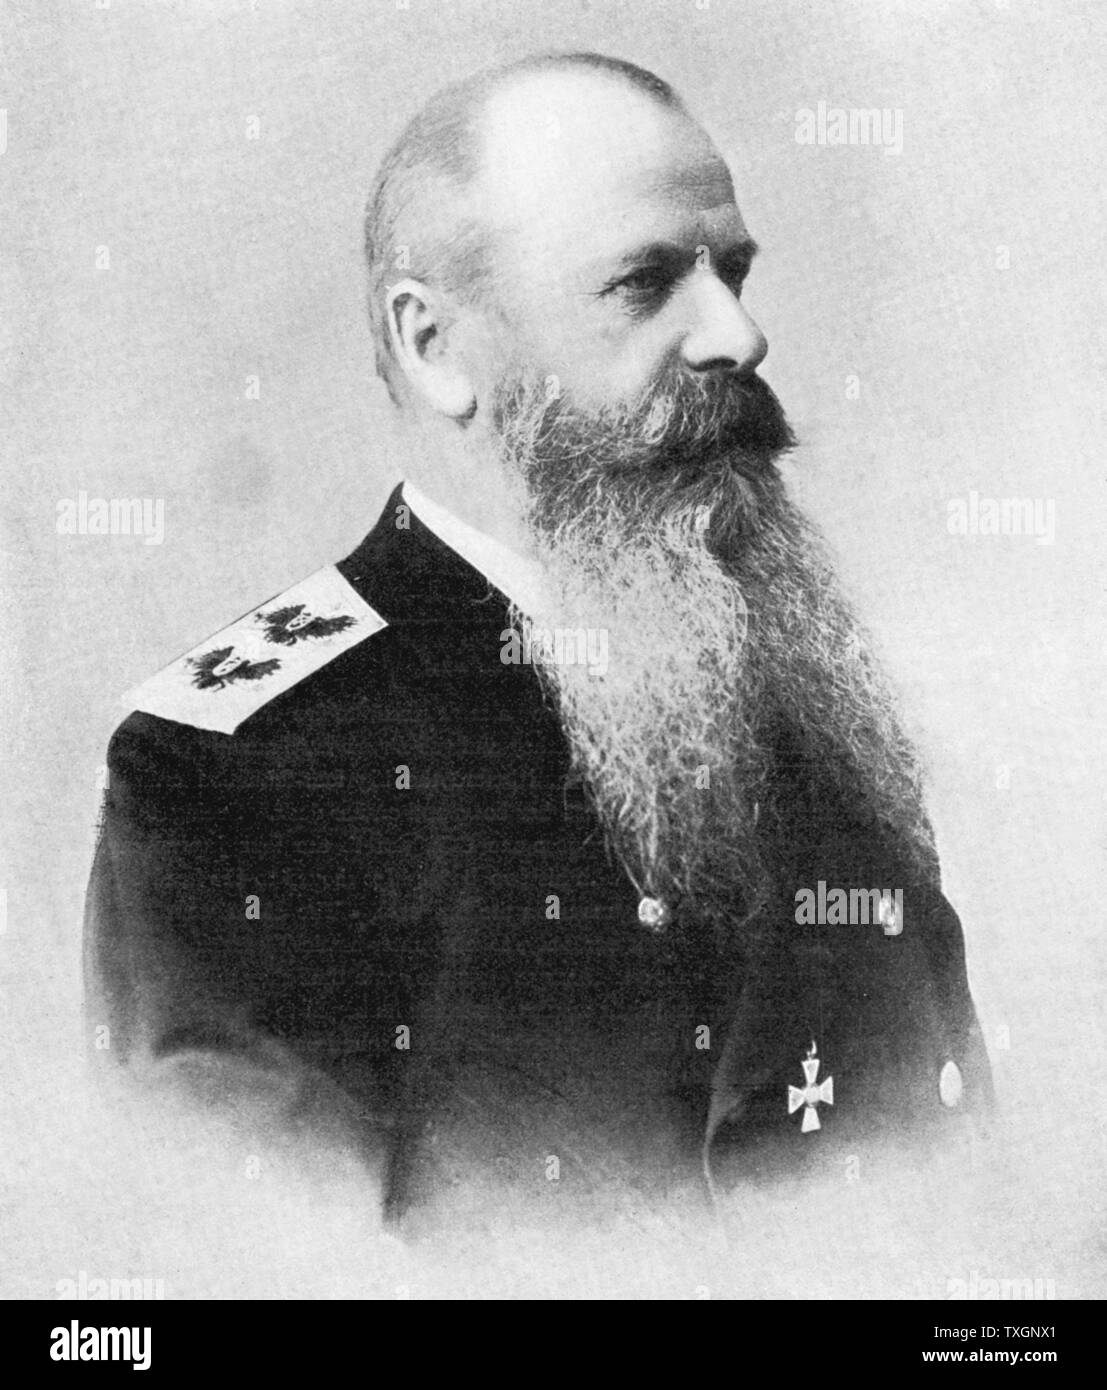 Stepan Makarow oder Makharoff Osipovich (1849-1904), der russischen Pazifikflotte zu Beginn des Russisch-Japanischen Krieges (1904-1905). Und ertrunken sein Flaggschiff "Petropavlosk' nach Auftreffen auf eine Mine sank Stockfoto